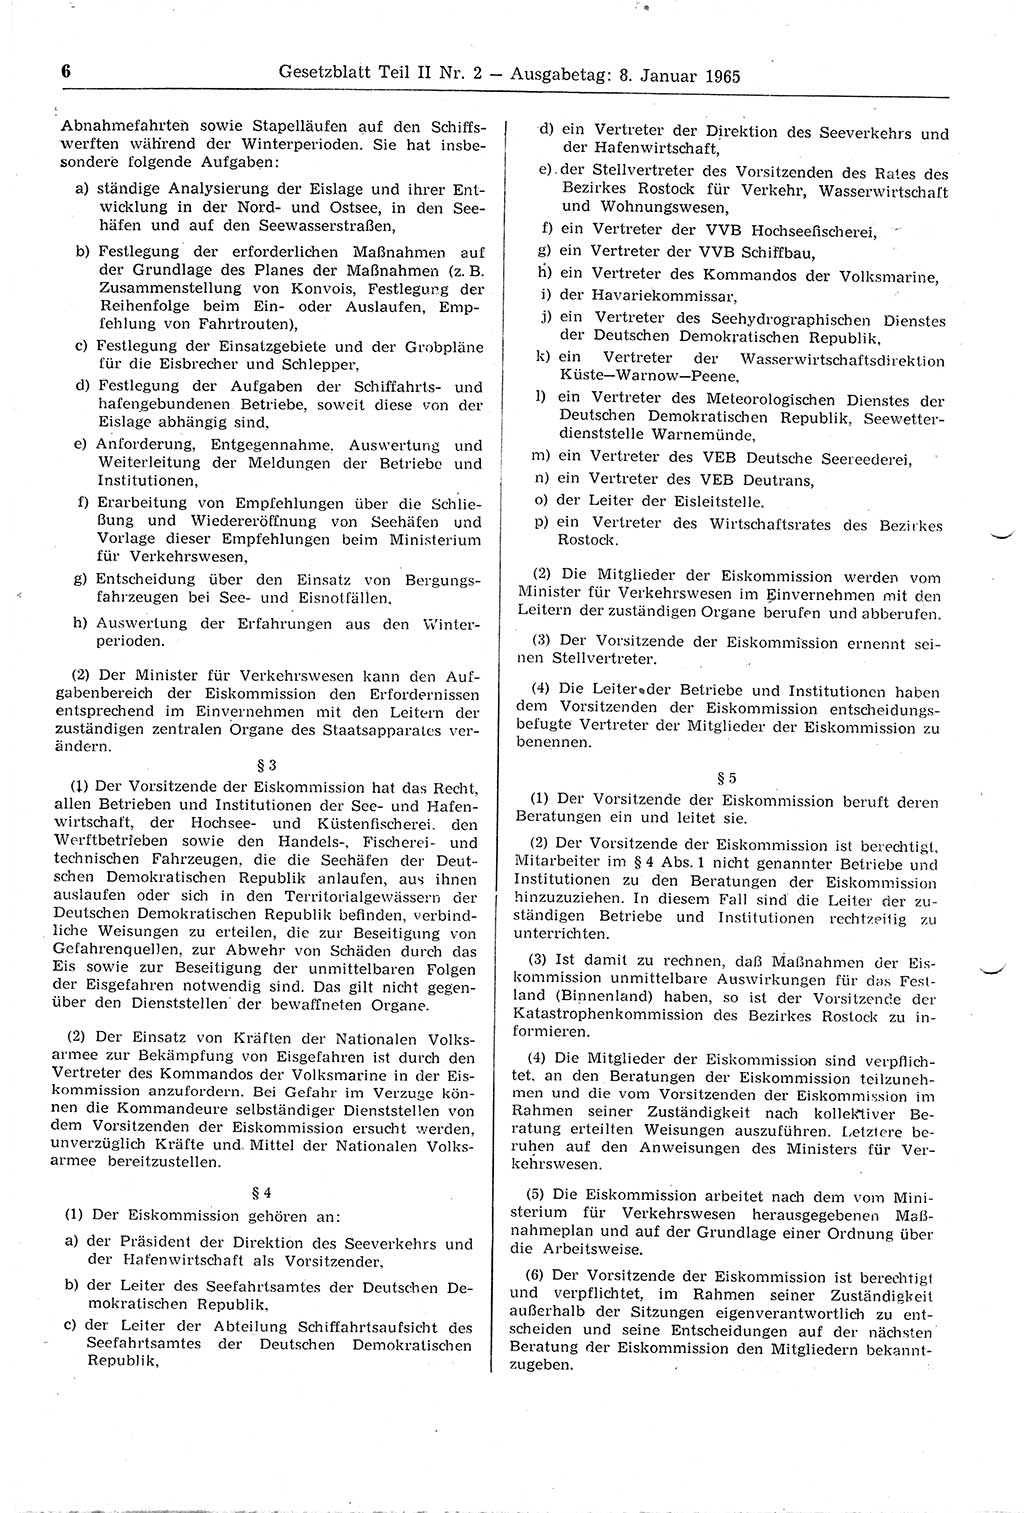 Gesetzblatt (GBl.) der Deutschen Demokratischen Republik (DDR) Teil ⅠⅠ 1965, Seite 6 (GBl. DDR ⅠⅠ 1965, S. 6)